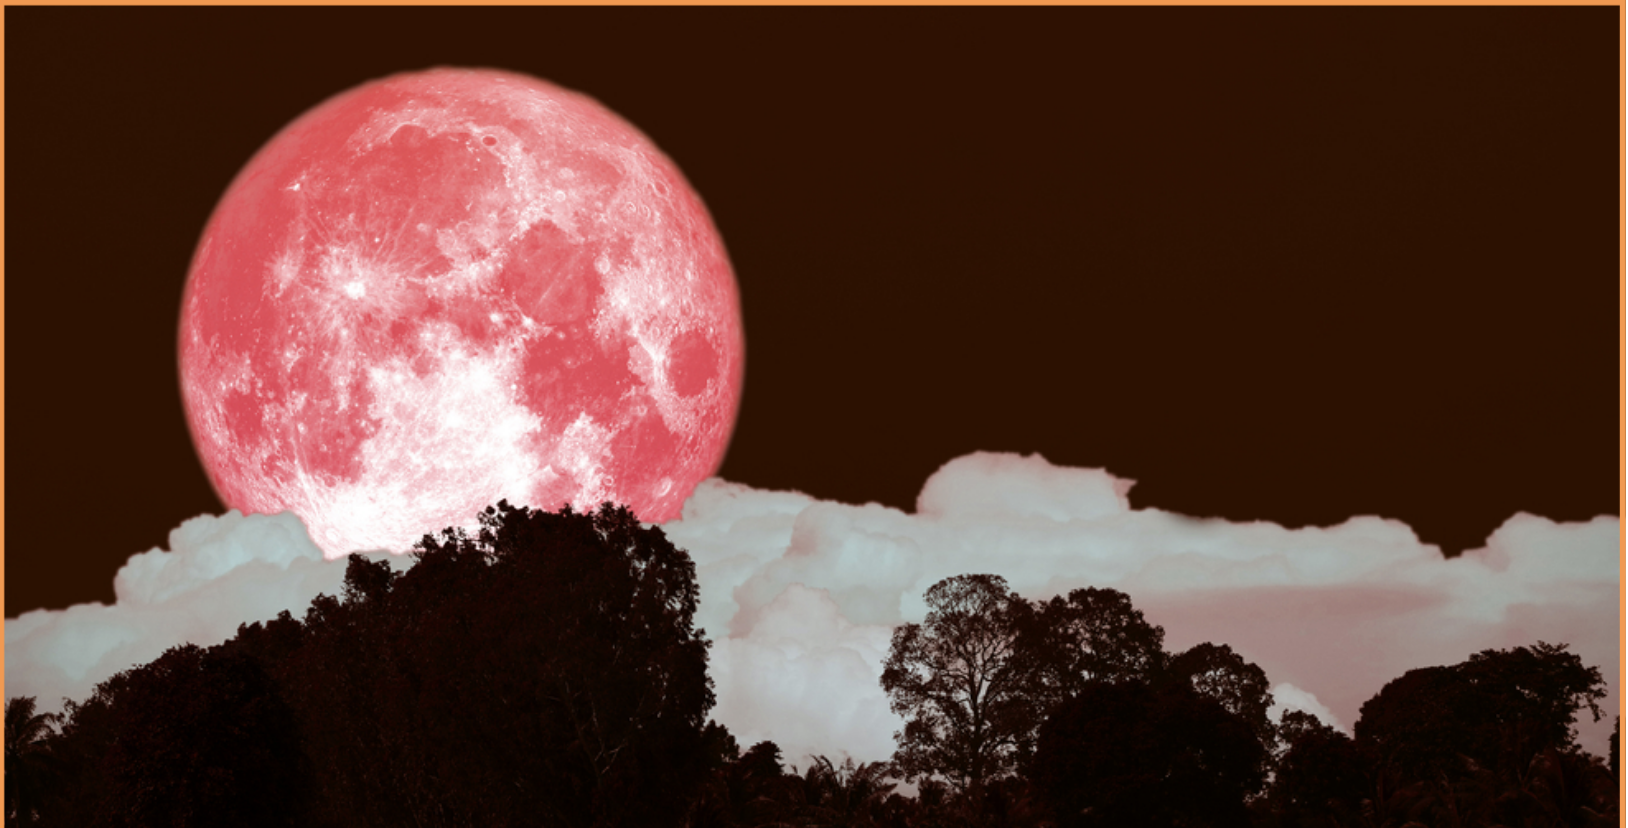 Явлението розова луна се появява винаги през месец април Тази